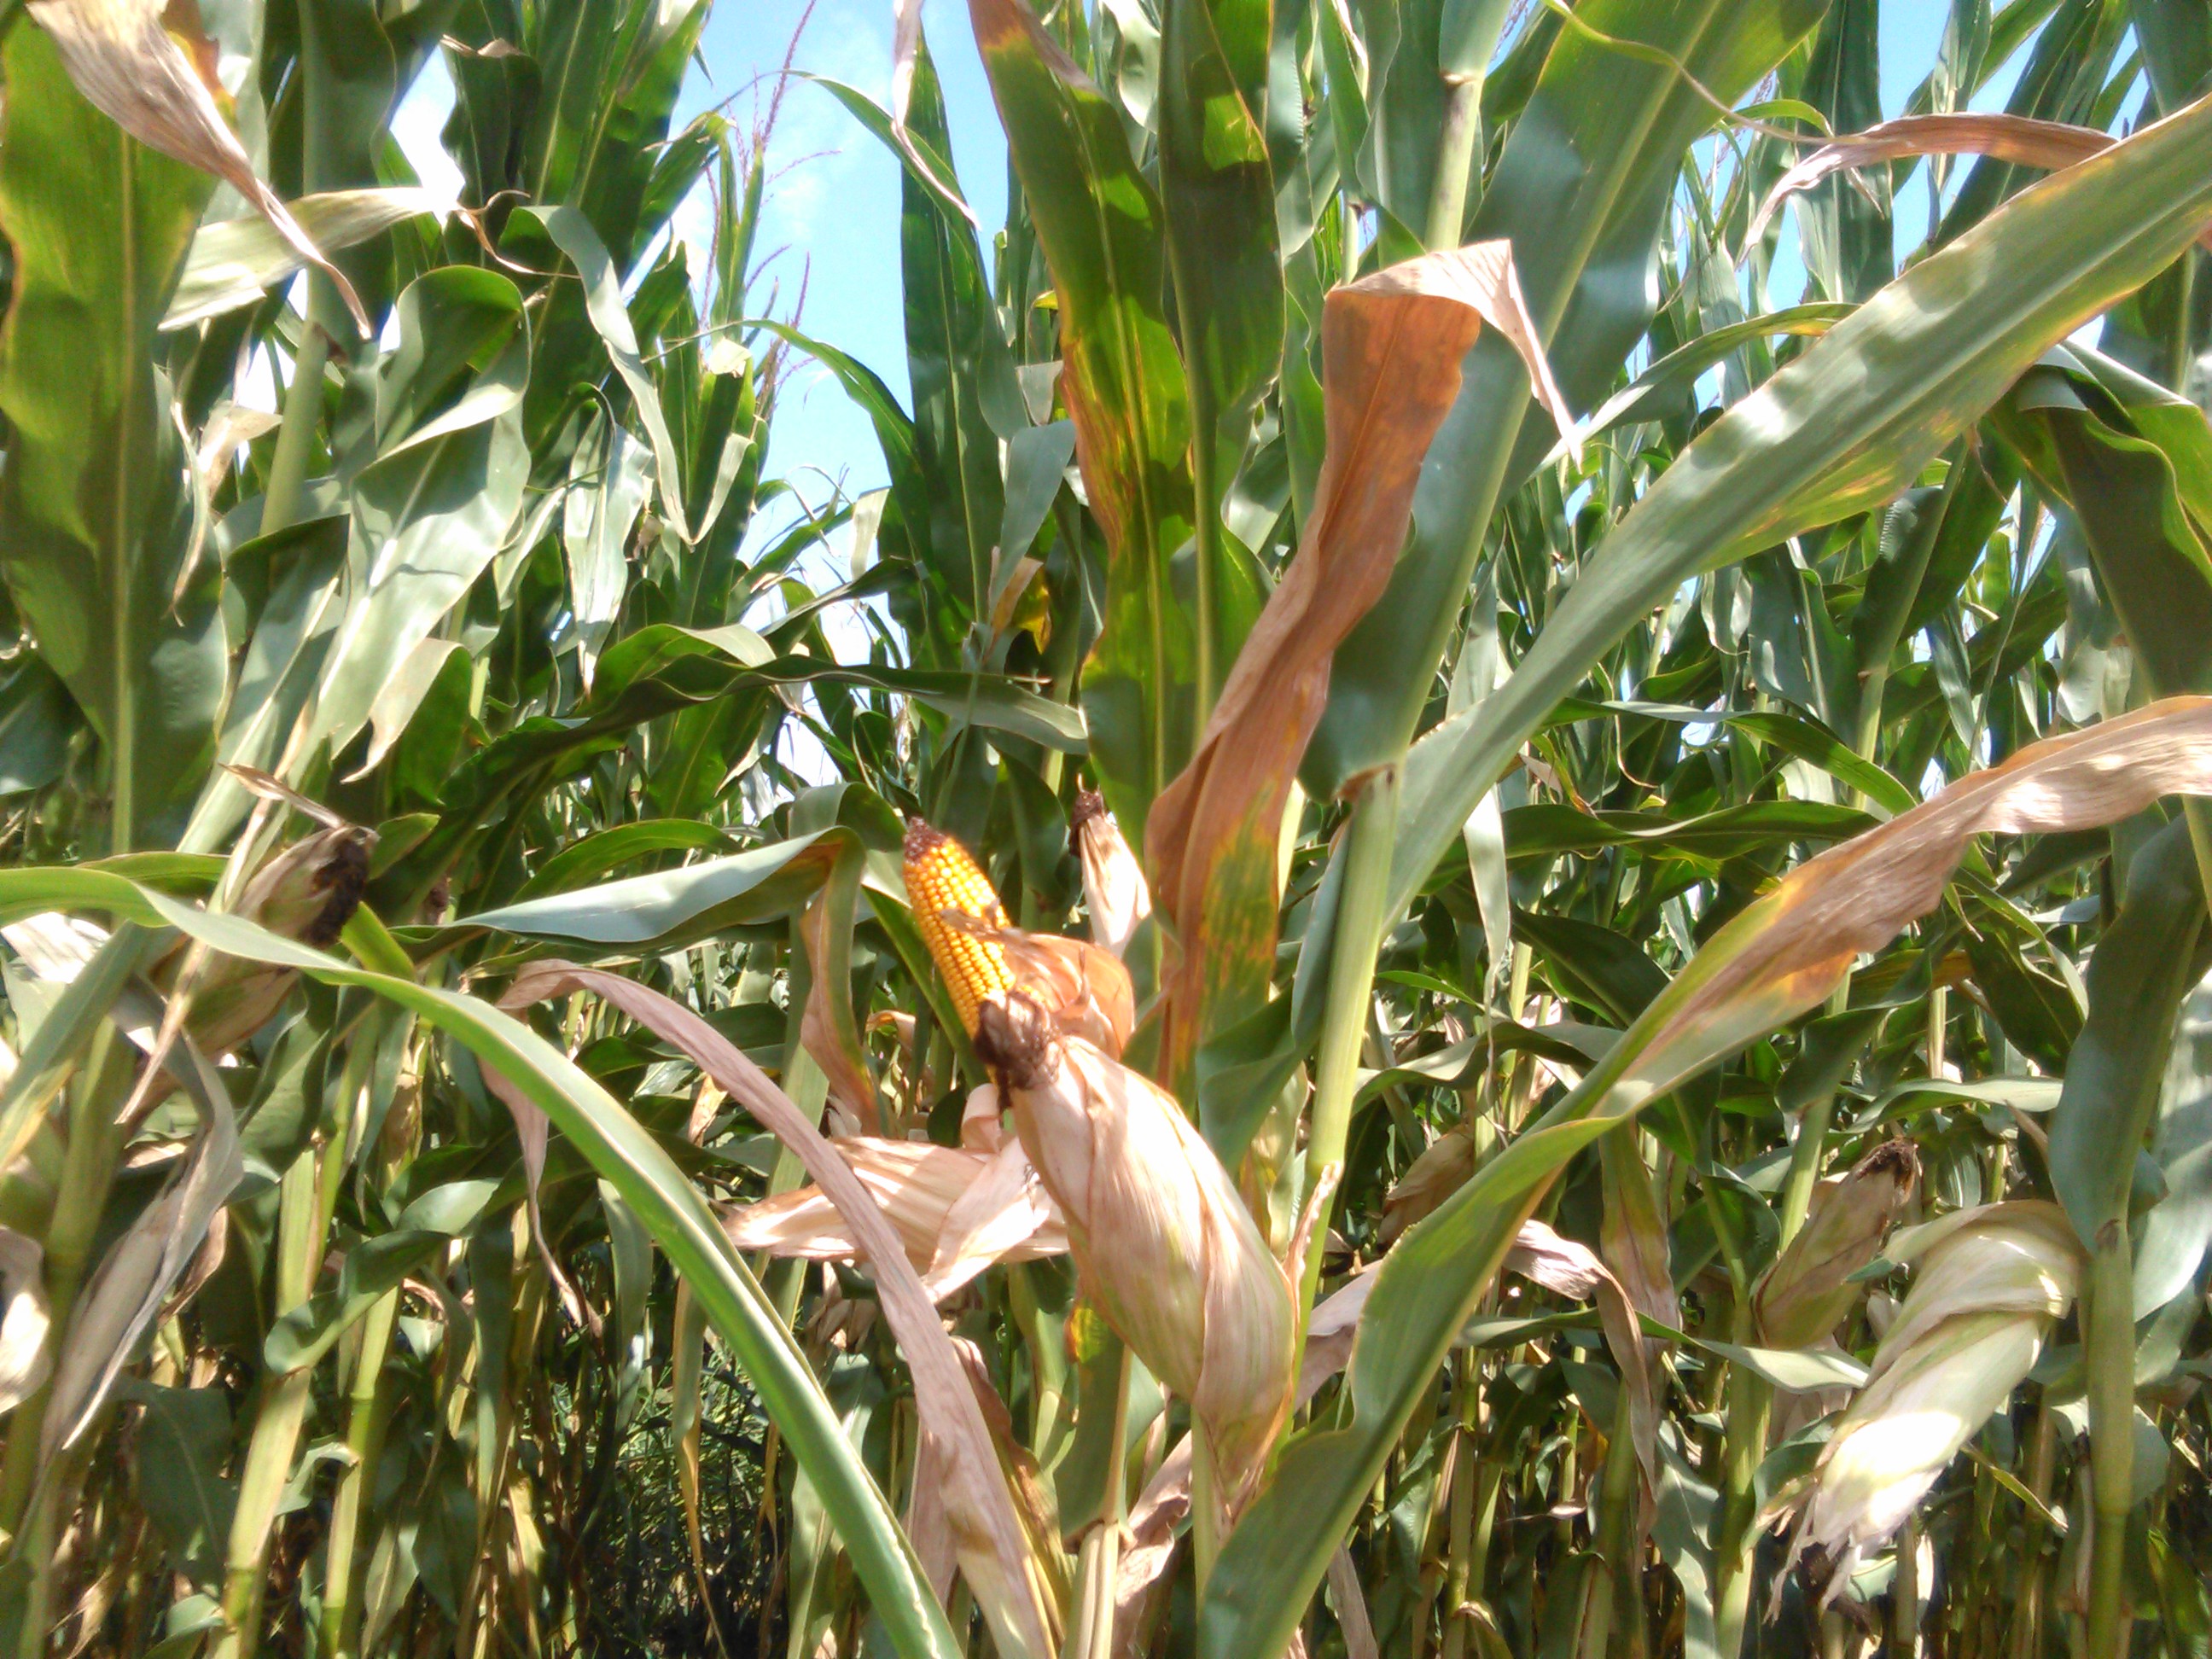 Autorizatii de urgenta pentru tratamentul cu insecticide neonicotinoide al semintelor de porumb si floarea-soarelui